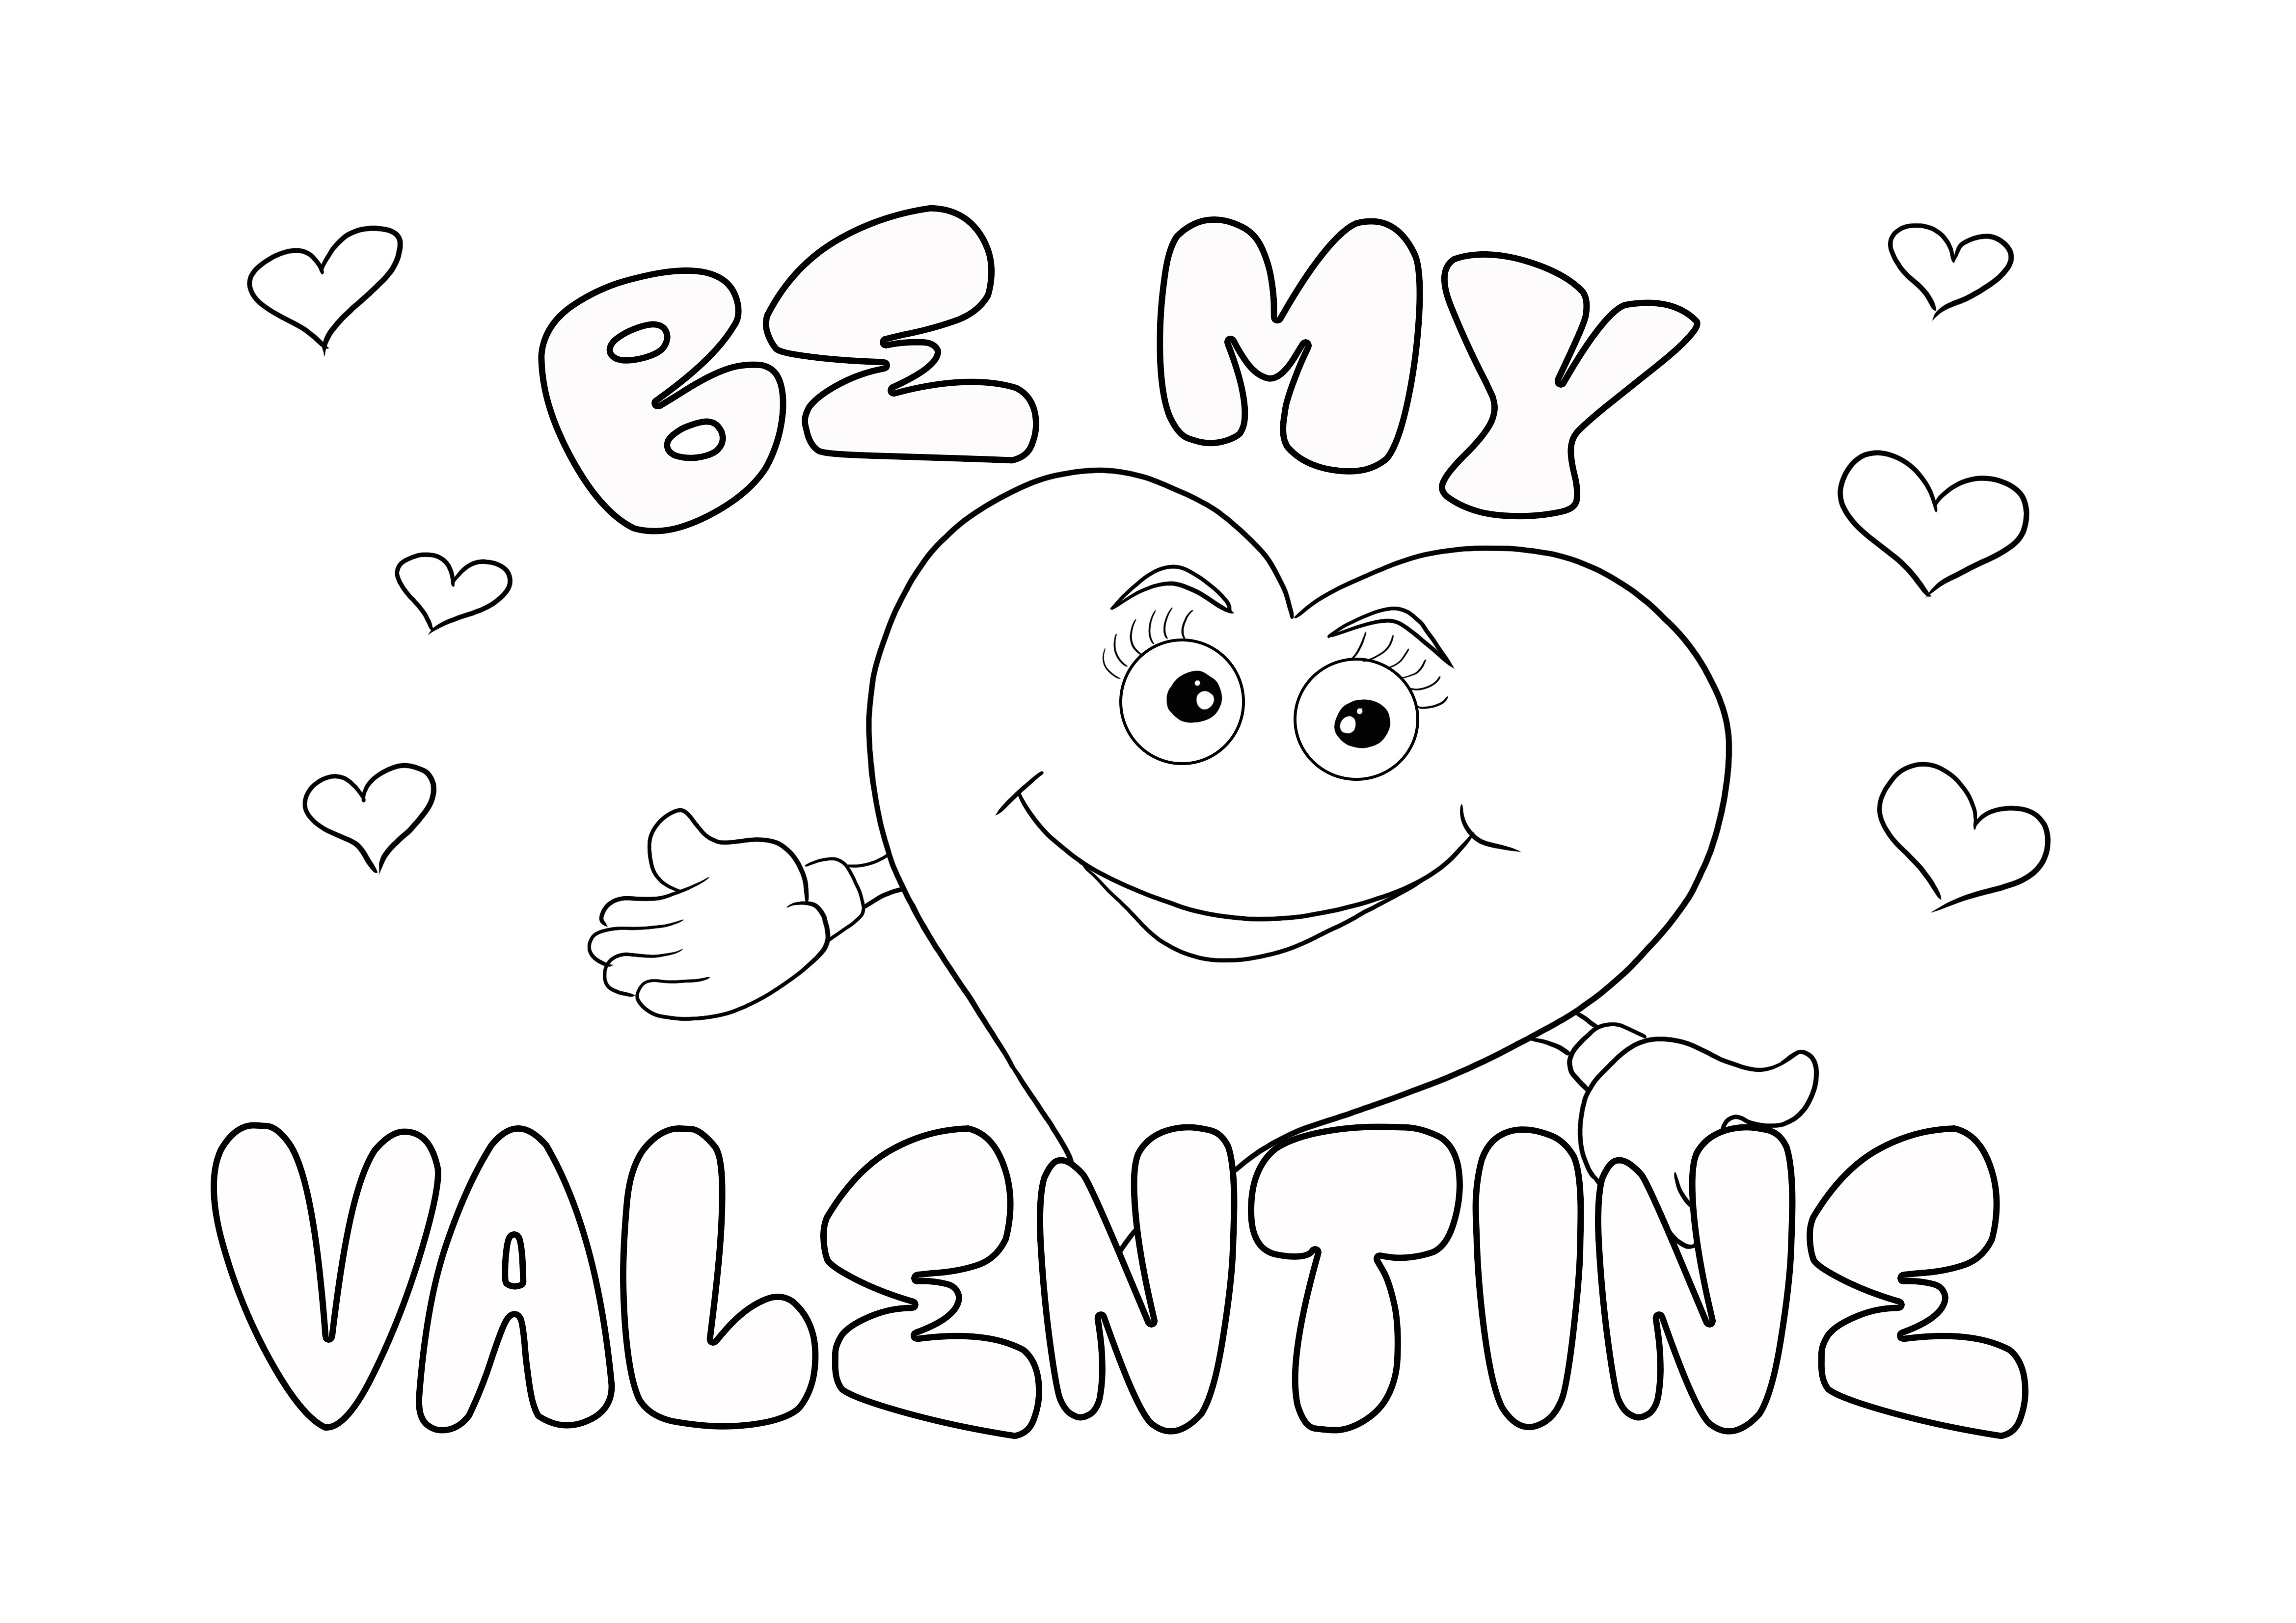 Inimă zâmbitoare pe felicitarea Be My Valentine imprimabilă gratuit pentru a colora